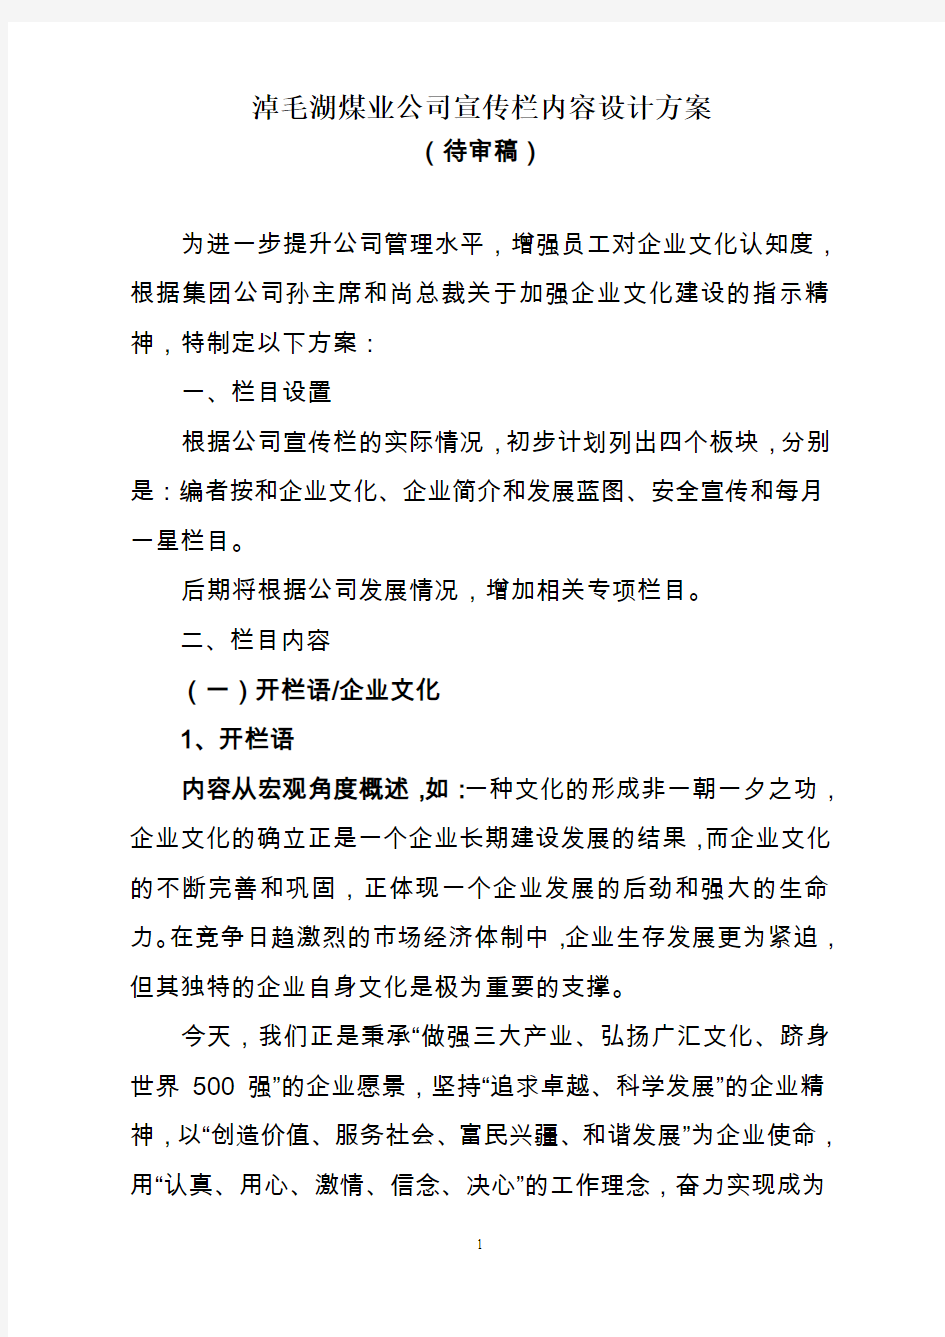 广汇淖毛湖煤业公司宣传栏内容设计方案(1)